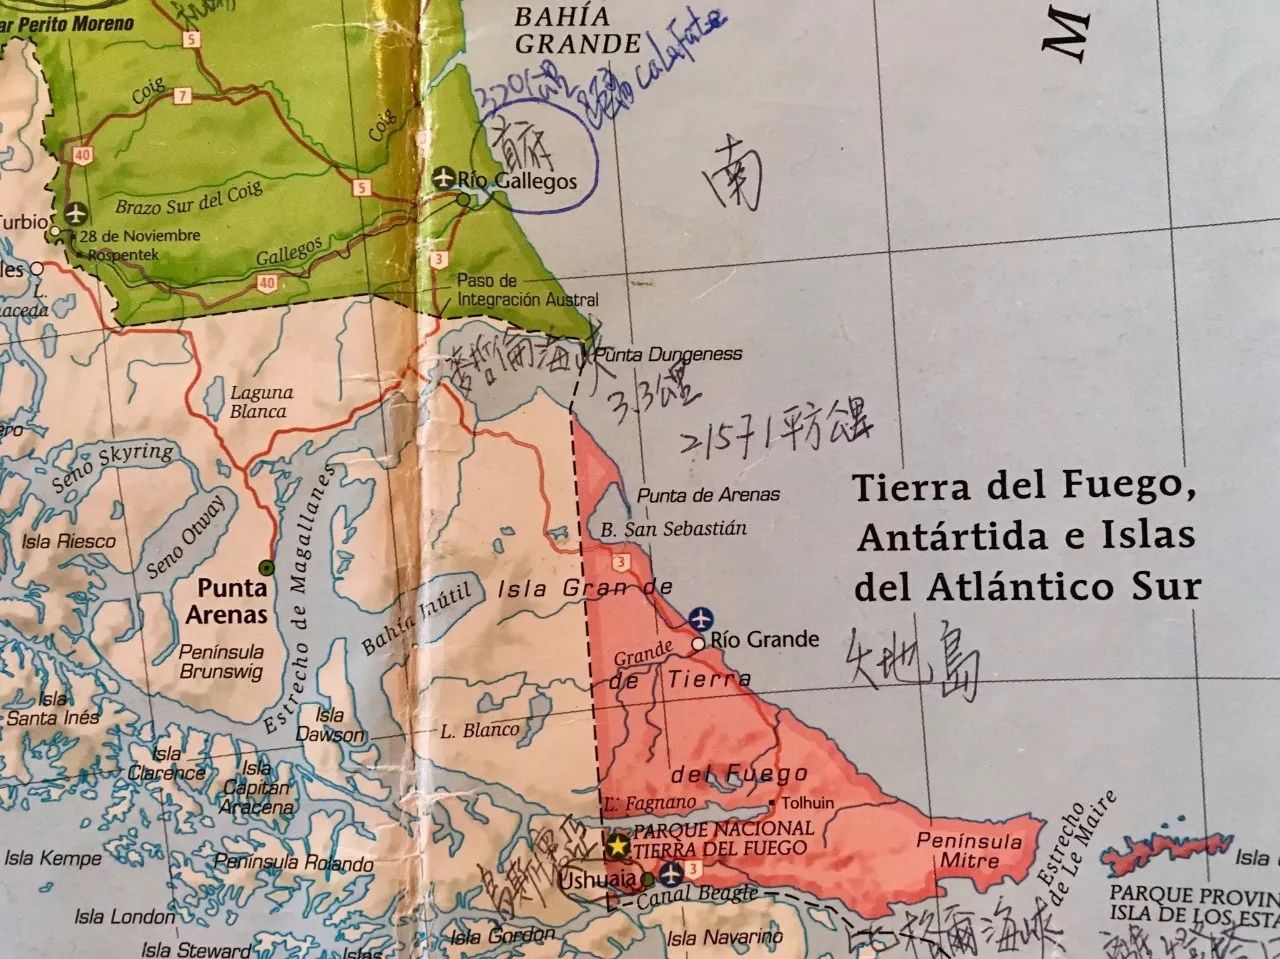 火地岛国家森林公园,入口处就是阿根廷3号公路的终止点,意味着到了